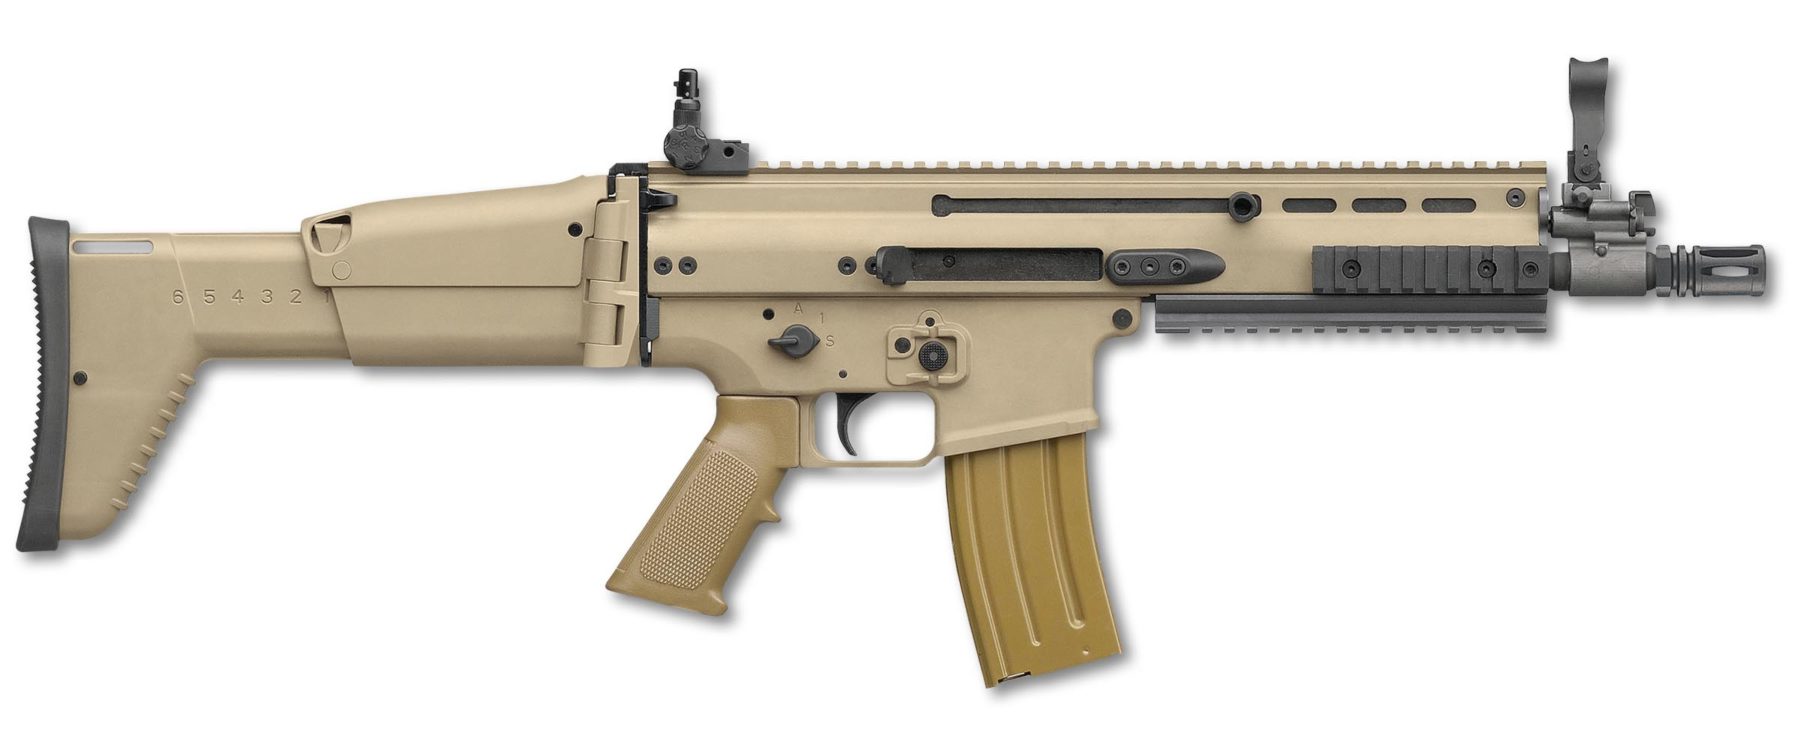 FN SCAR 16 CQC